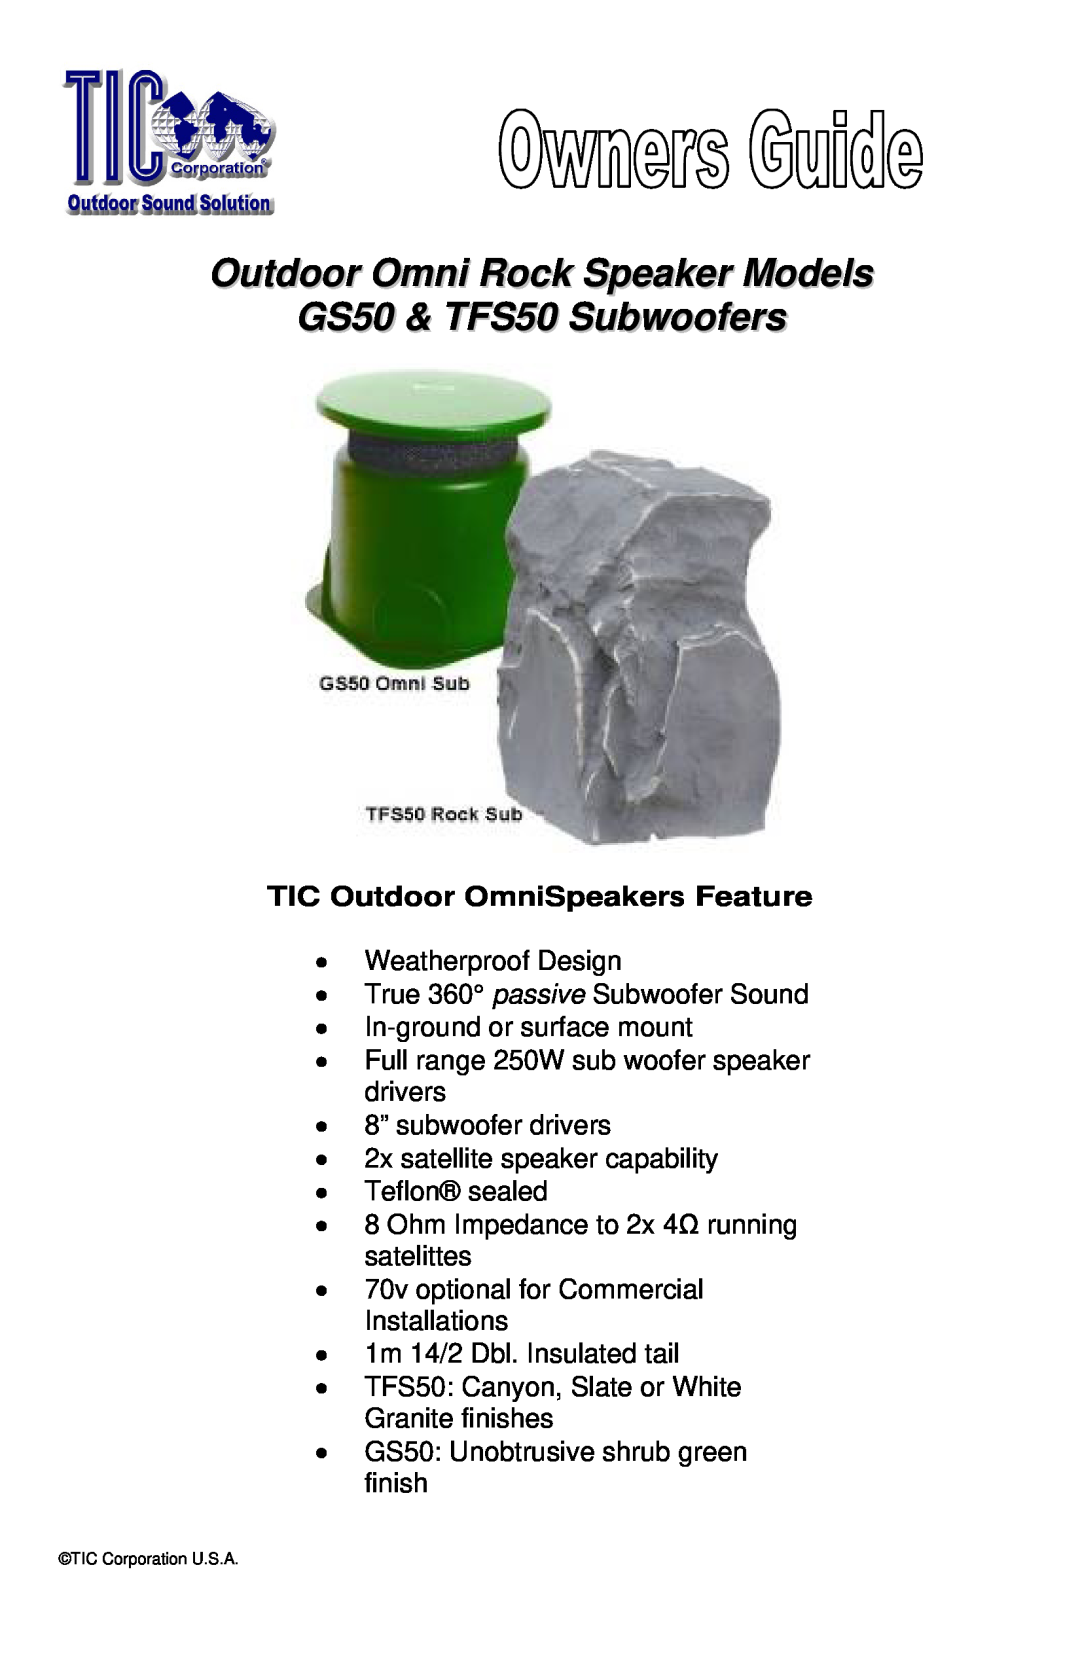 TIC manual Outdoor Omni Rock Speaker Models, GS50 & TFS50 Subwoofers, TIC Outdoor OmniSpeakers Feature 